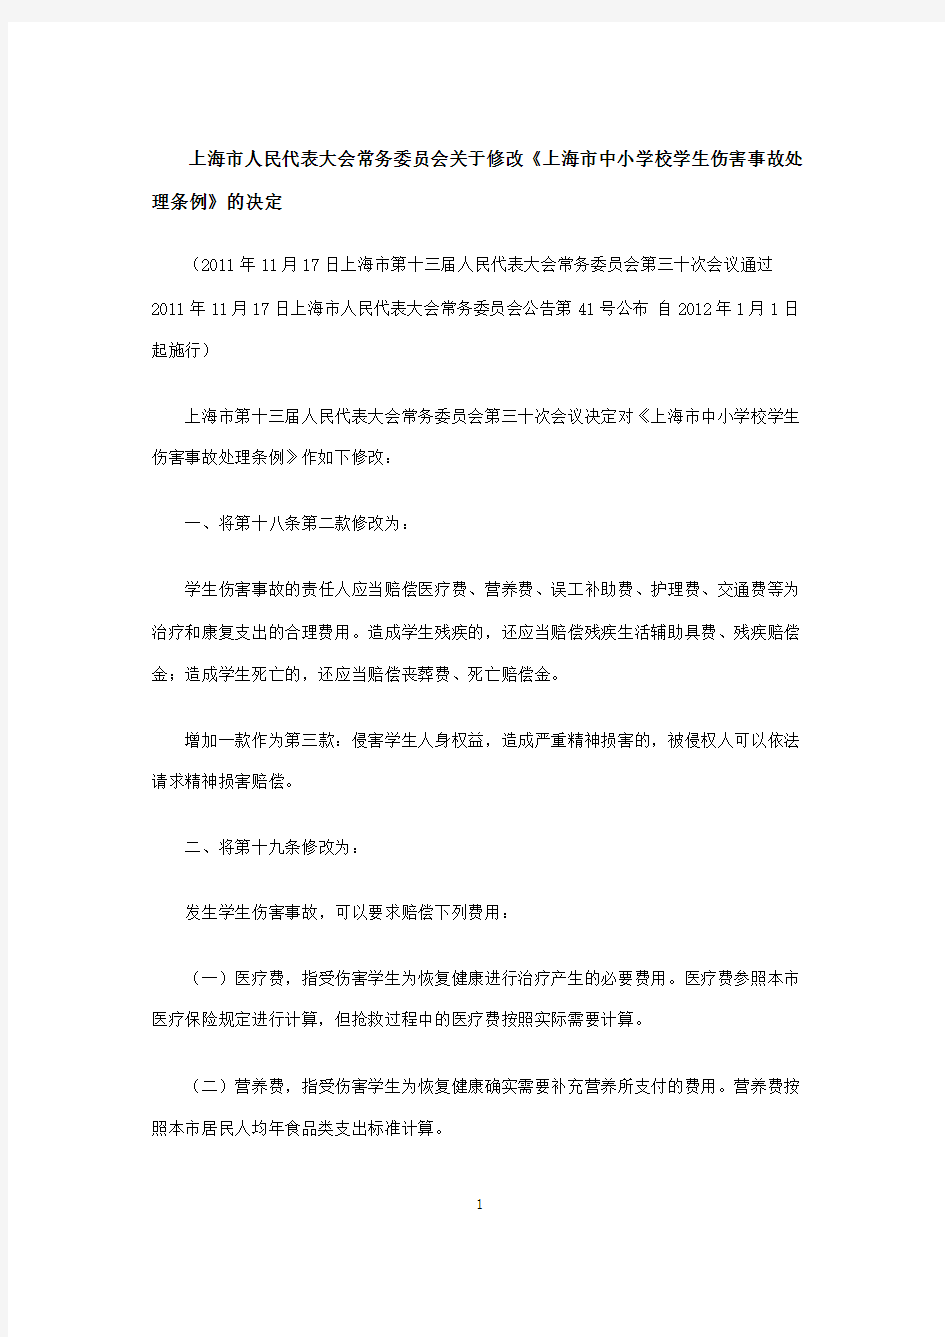 上海市中小学校学生伤害事故处理条例(2011年修正本)